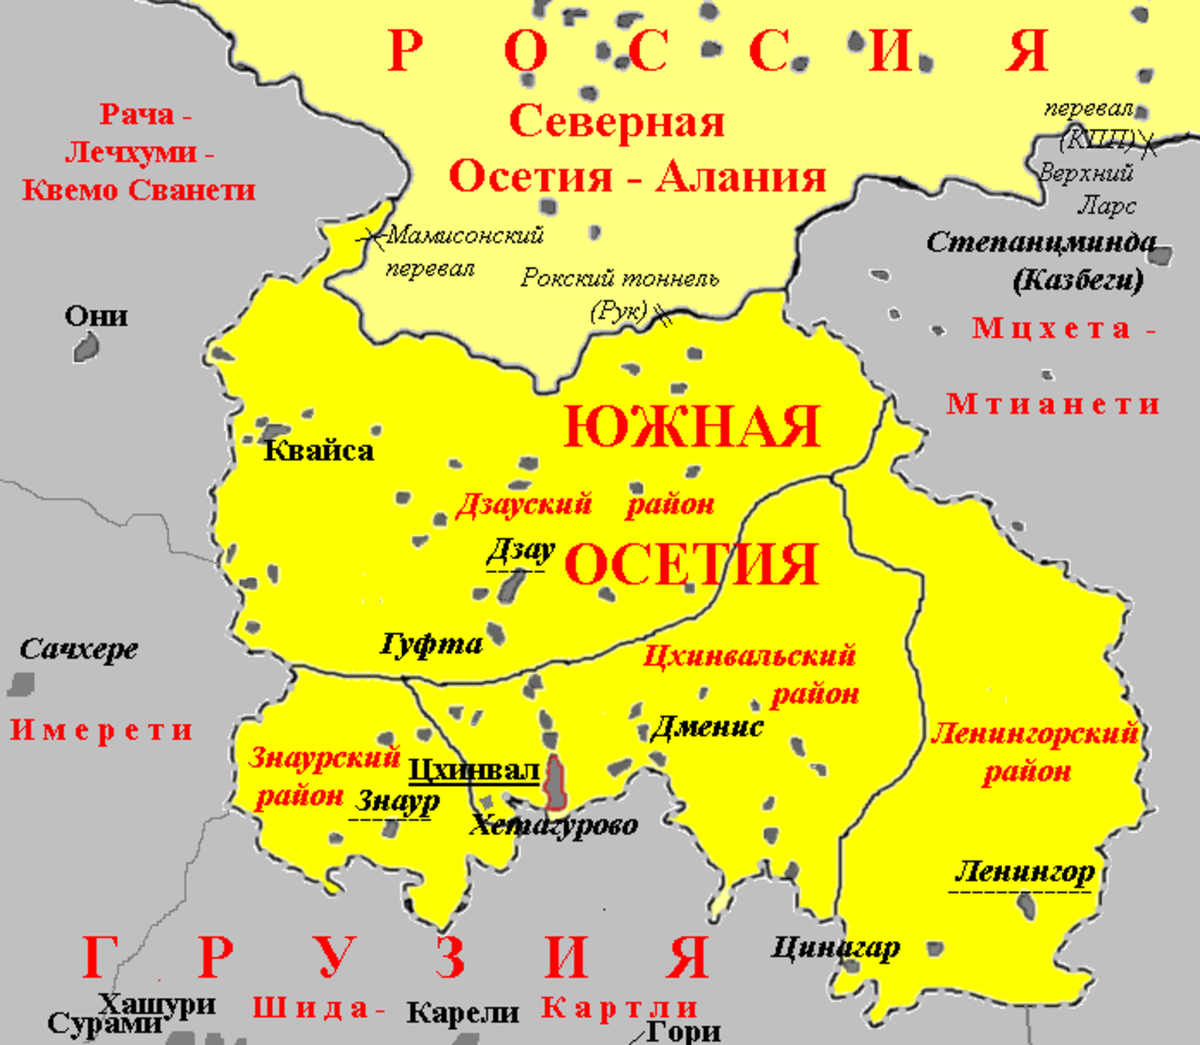 Знаурский район Южная Осетия на карте. Карта Южная Осетия граница с Россией. Границы Южной и Северной Осетии на карте. Южная Осетия на карте граница. Показать на карте южную осетию